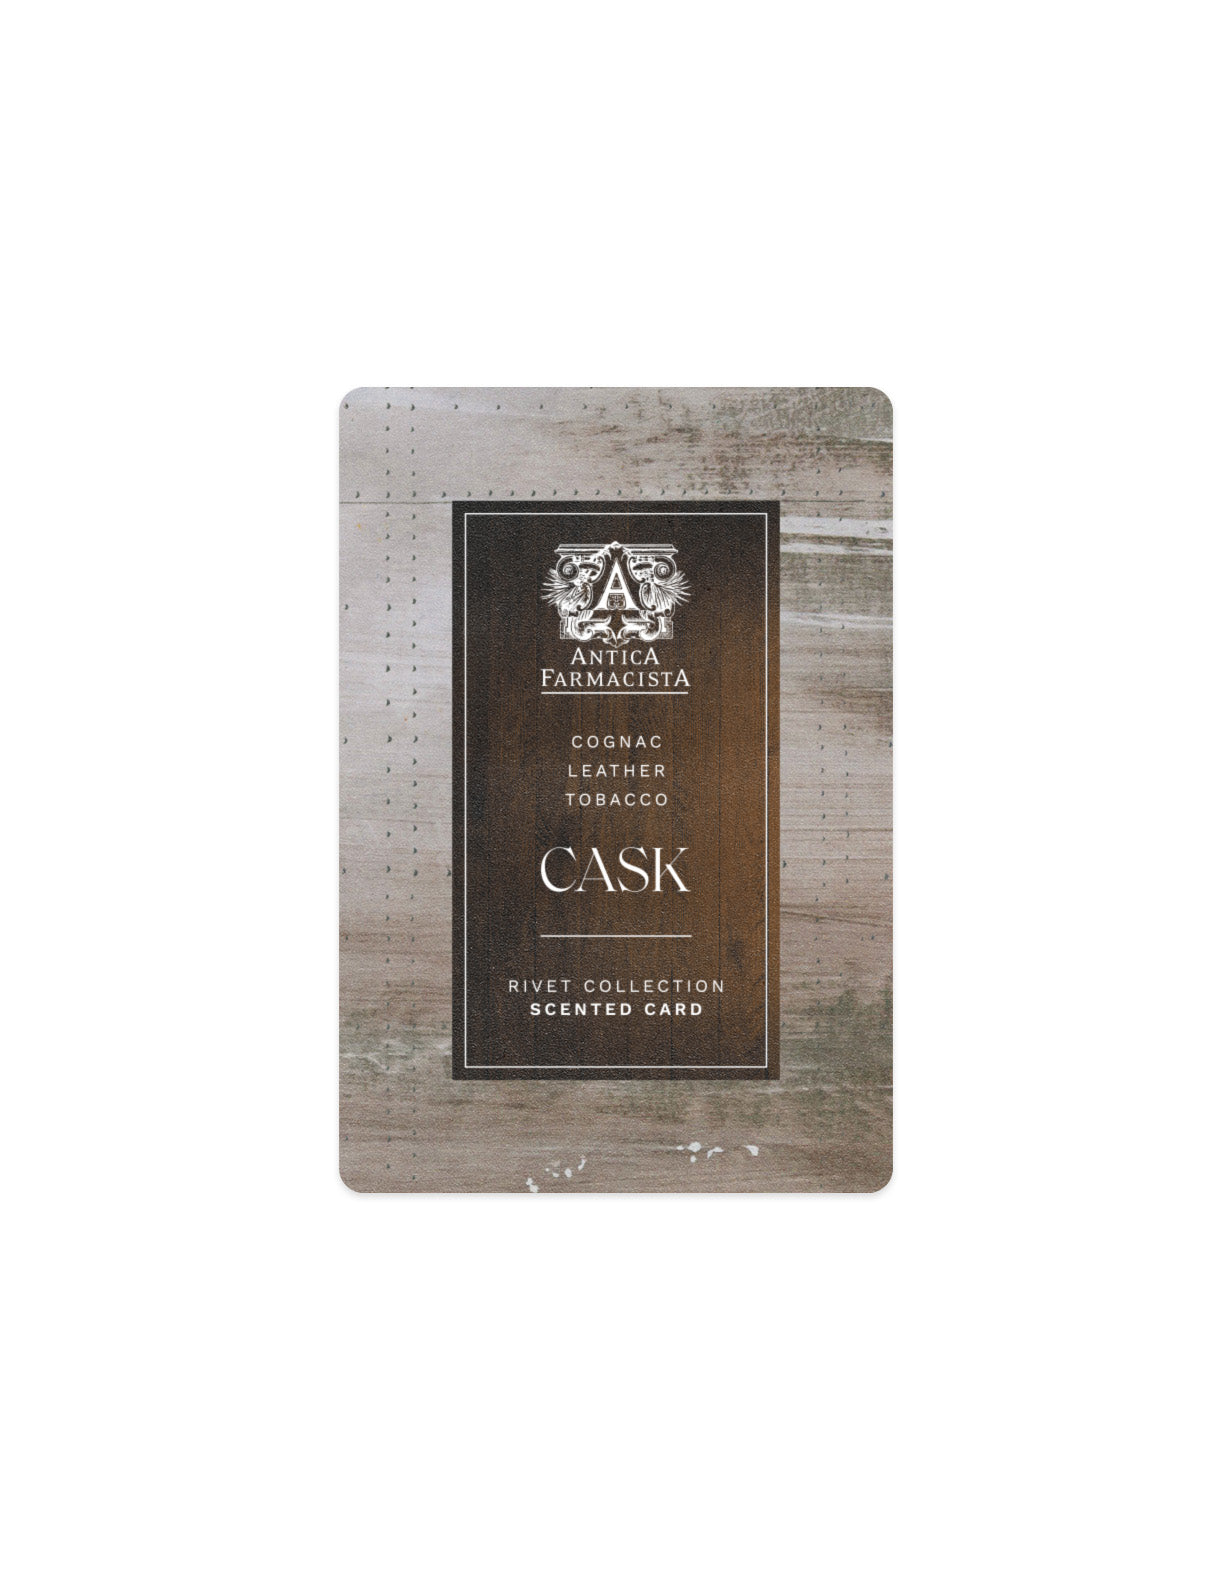 GWP - Scented Card - Cask (Rivet)